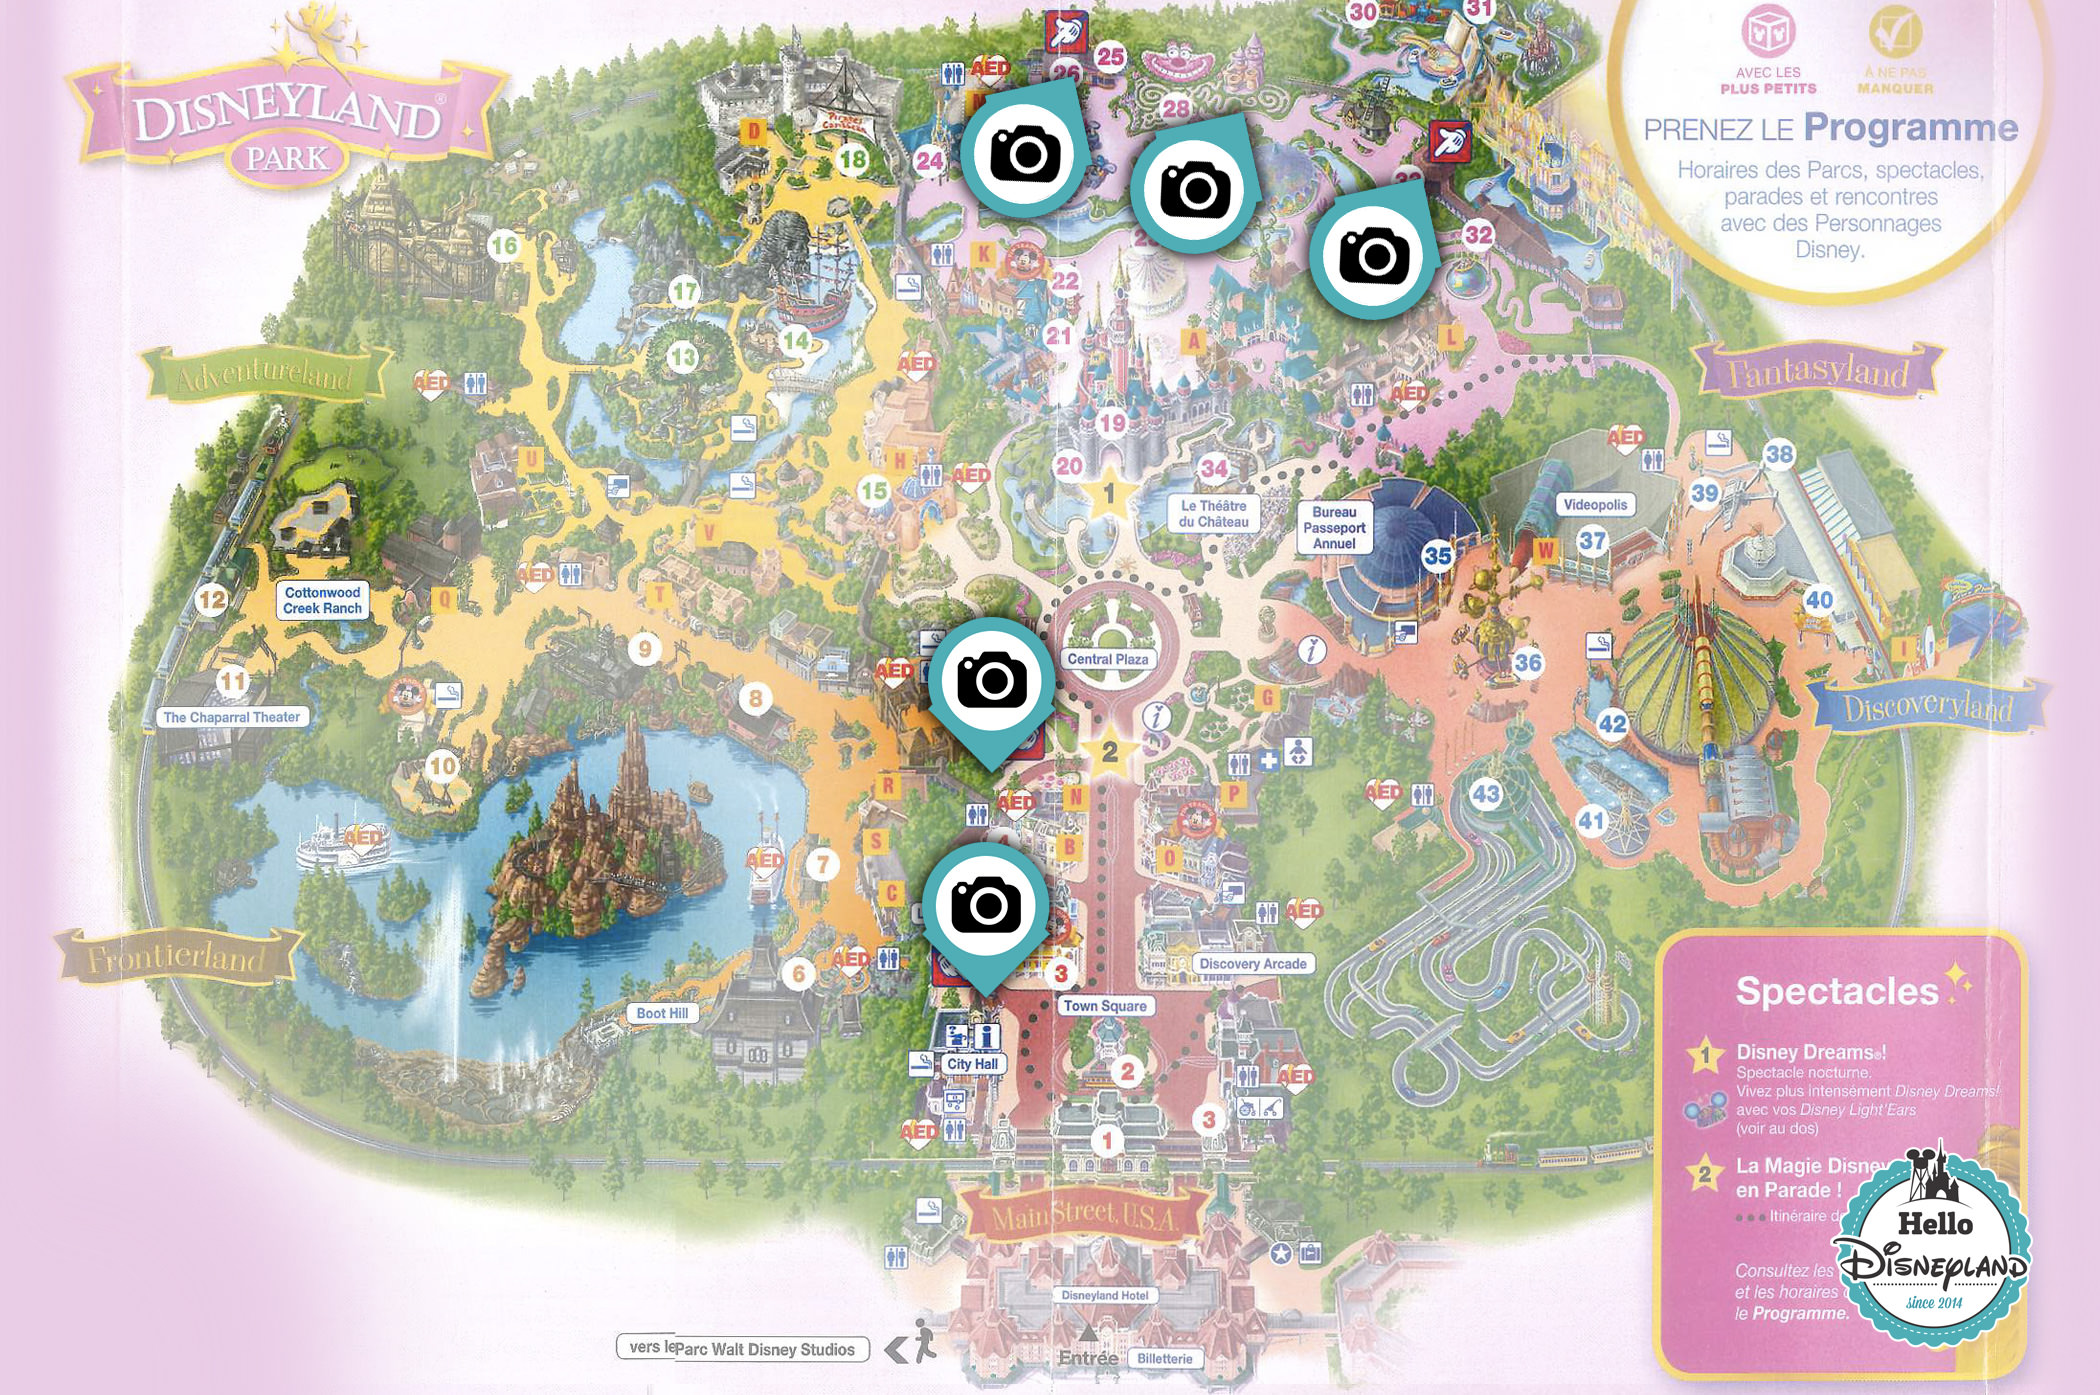  Points Photo Princesses et Personnages Disney au parc Disneyland